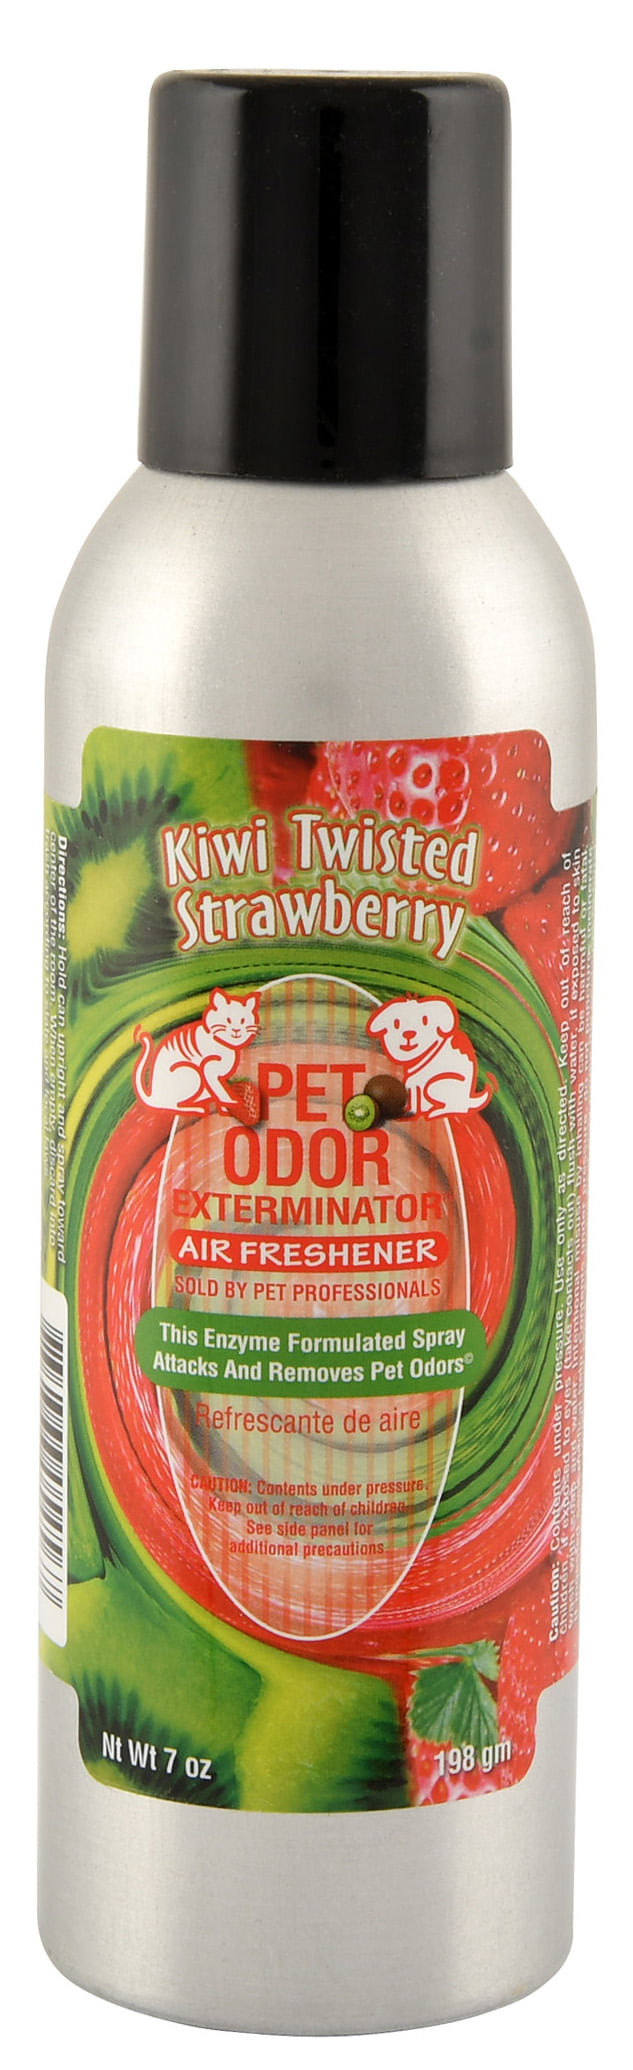 Pet-Odor-Exterminator-Spray-Kiwi-Twisted-Strawberry